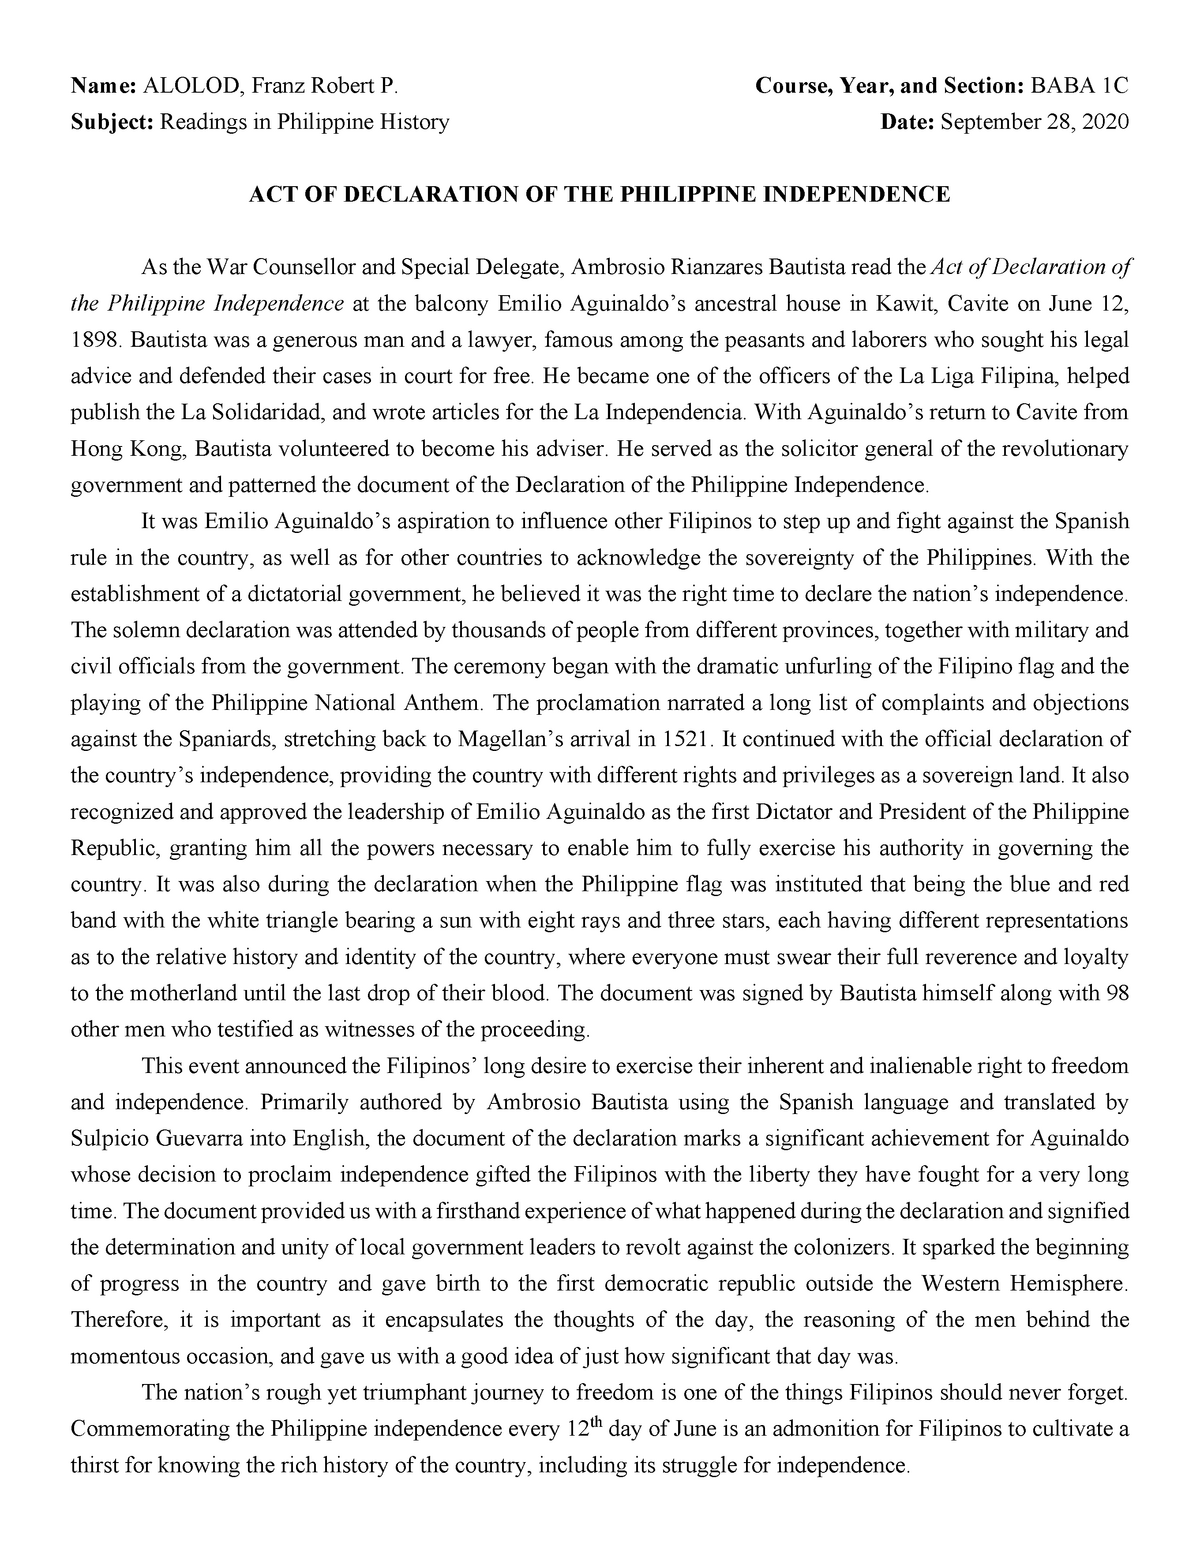 short essay about philippine revolution